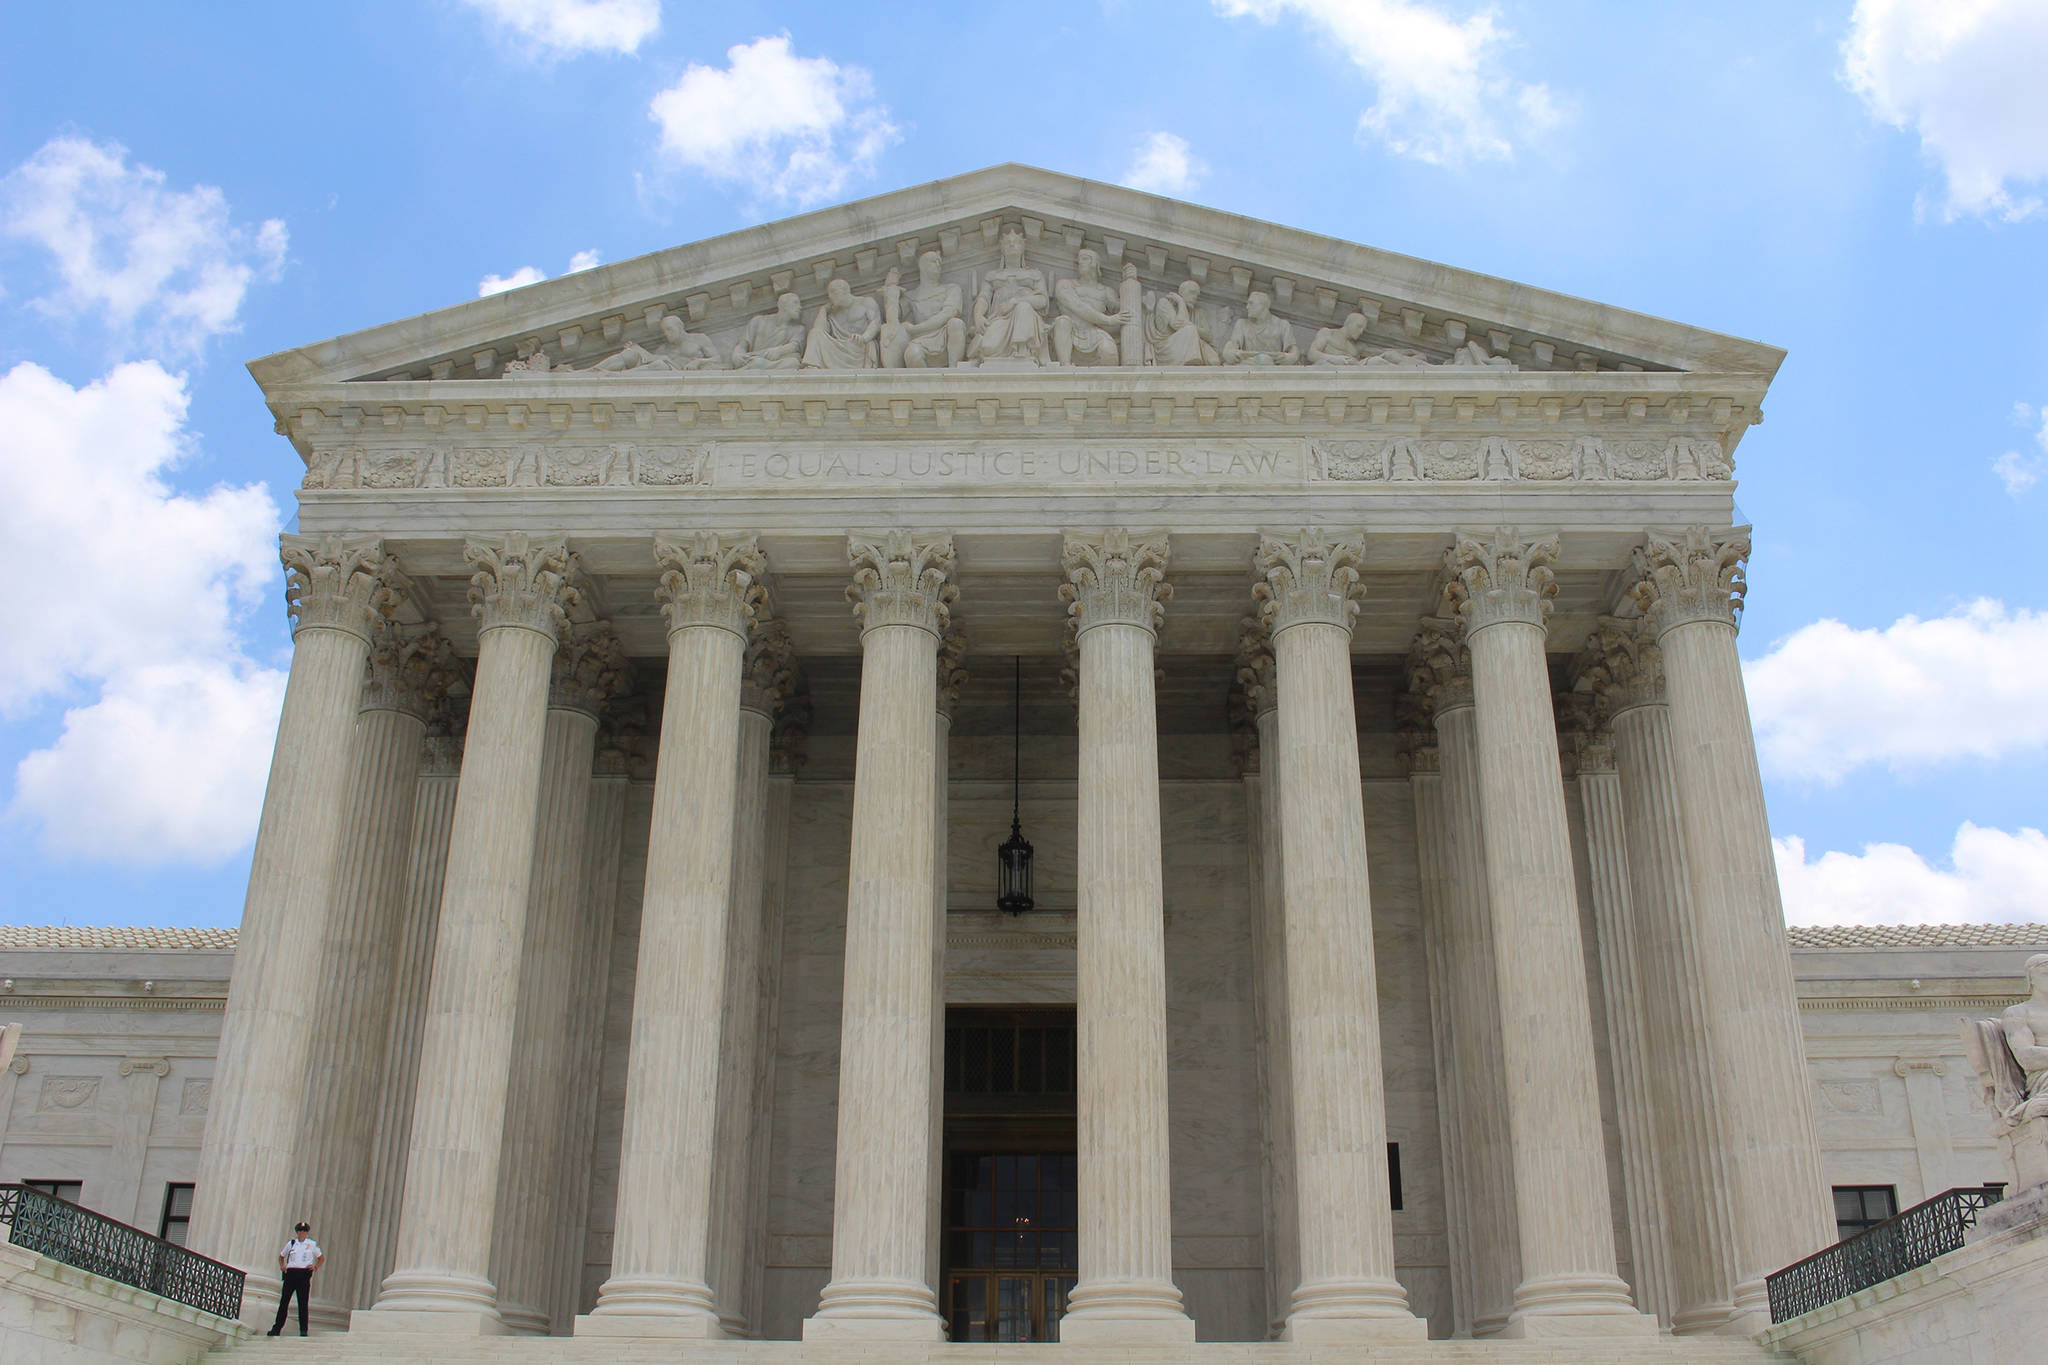 Opinion: The U.S. Supreme (Political) Court